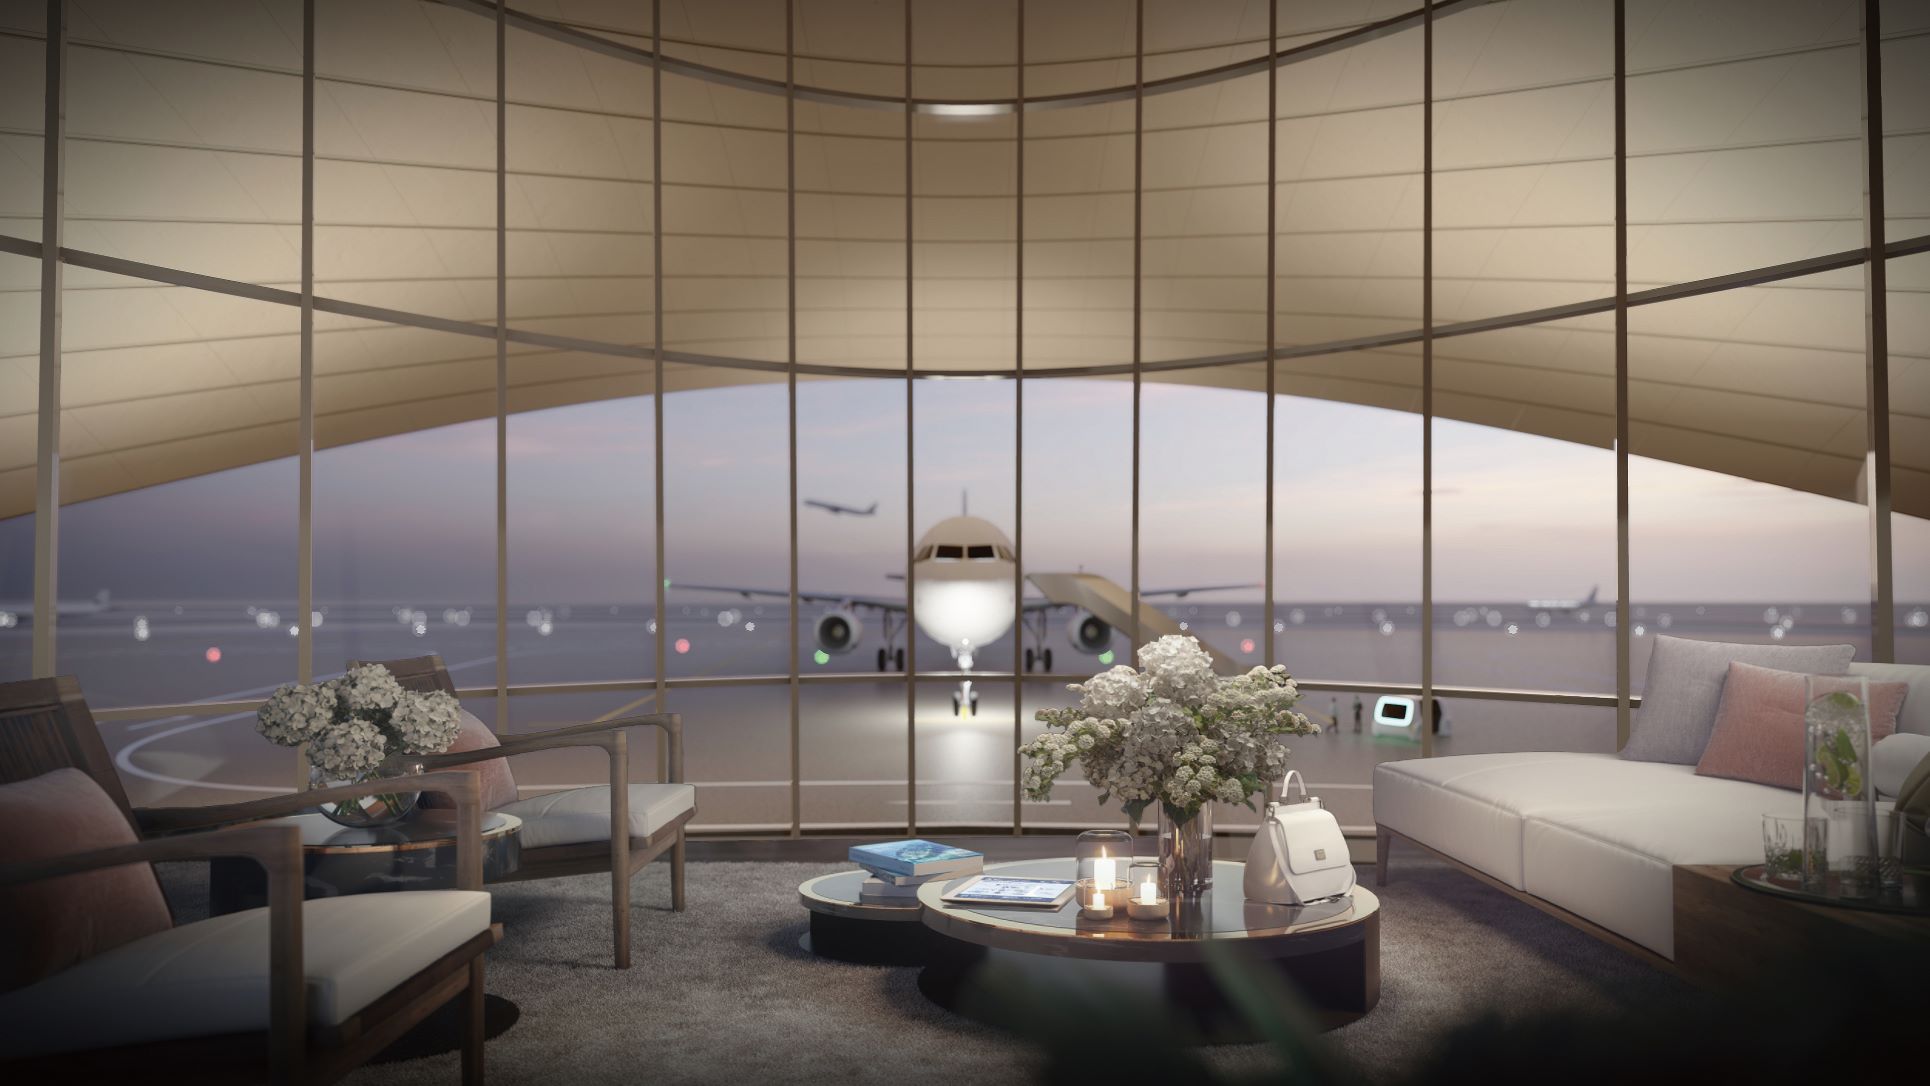 宾客在候机时，能够透过圆弧型的玻璃墙幕，欣赏到飞机在漠地前起飞、降落的景色。